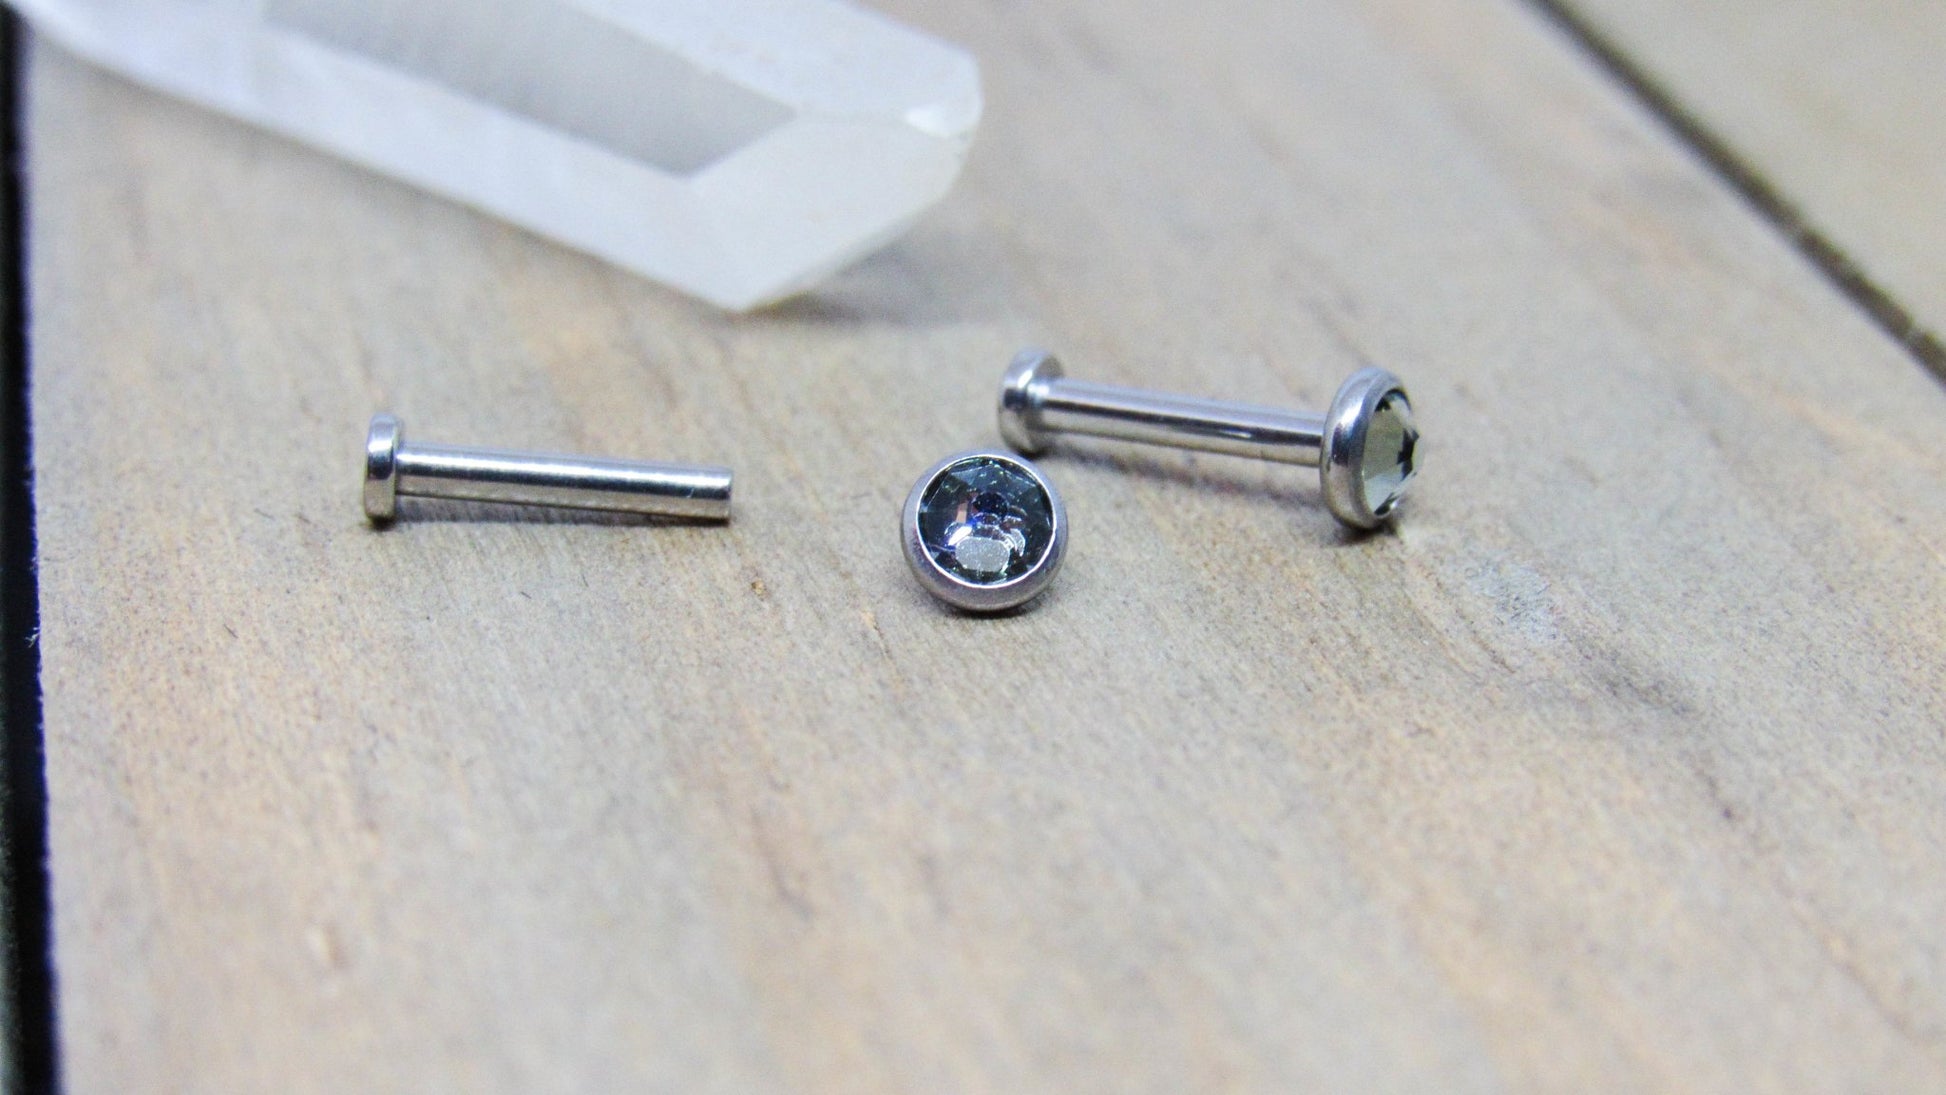 Titanium flat back earring labret 18g-16g internally threaded hypoallergenic ear piercing jewelry stud 4mm bezel smoke gemstone - SirenBodyJewelry